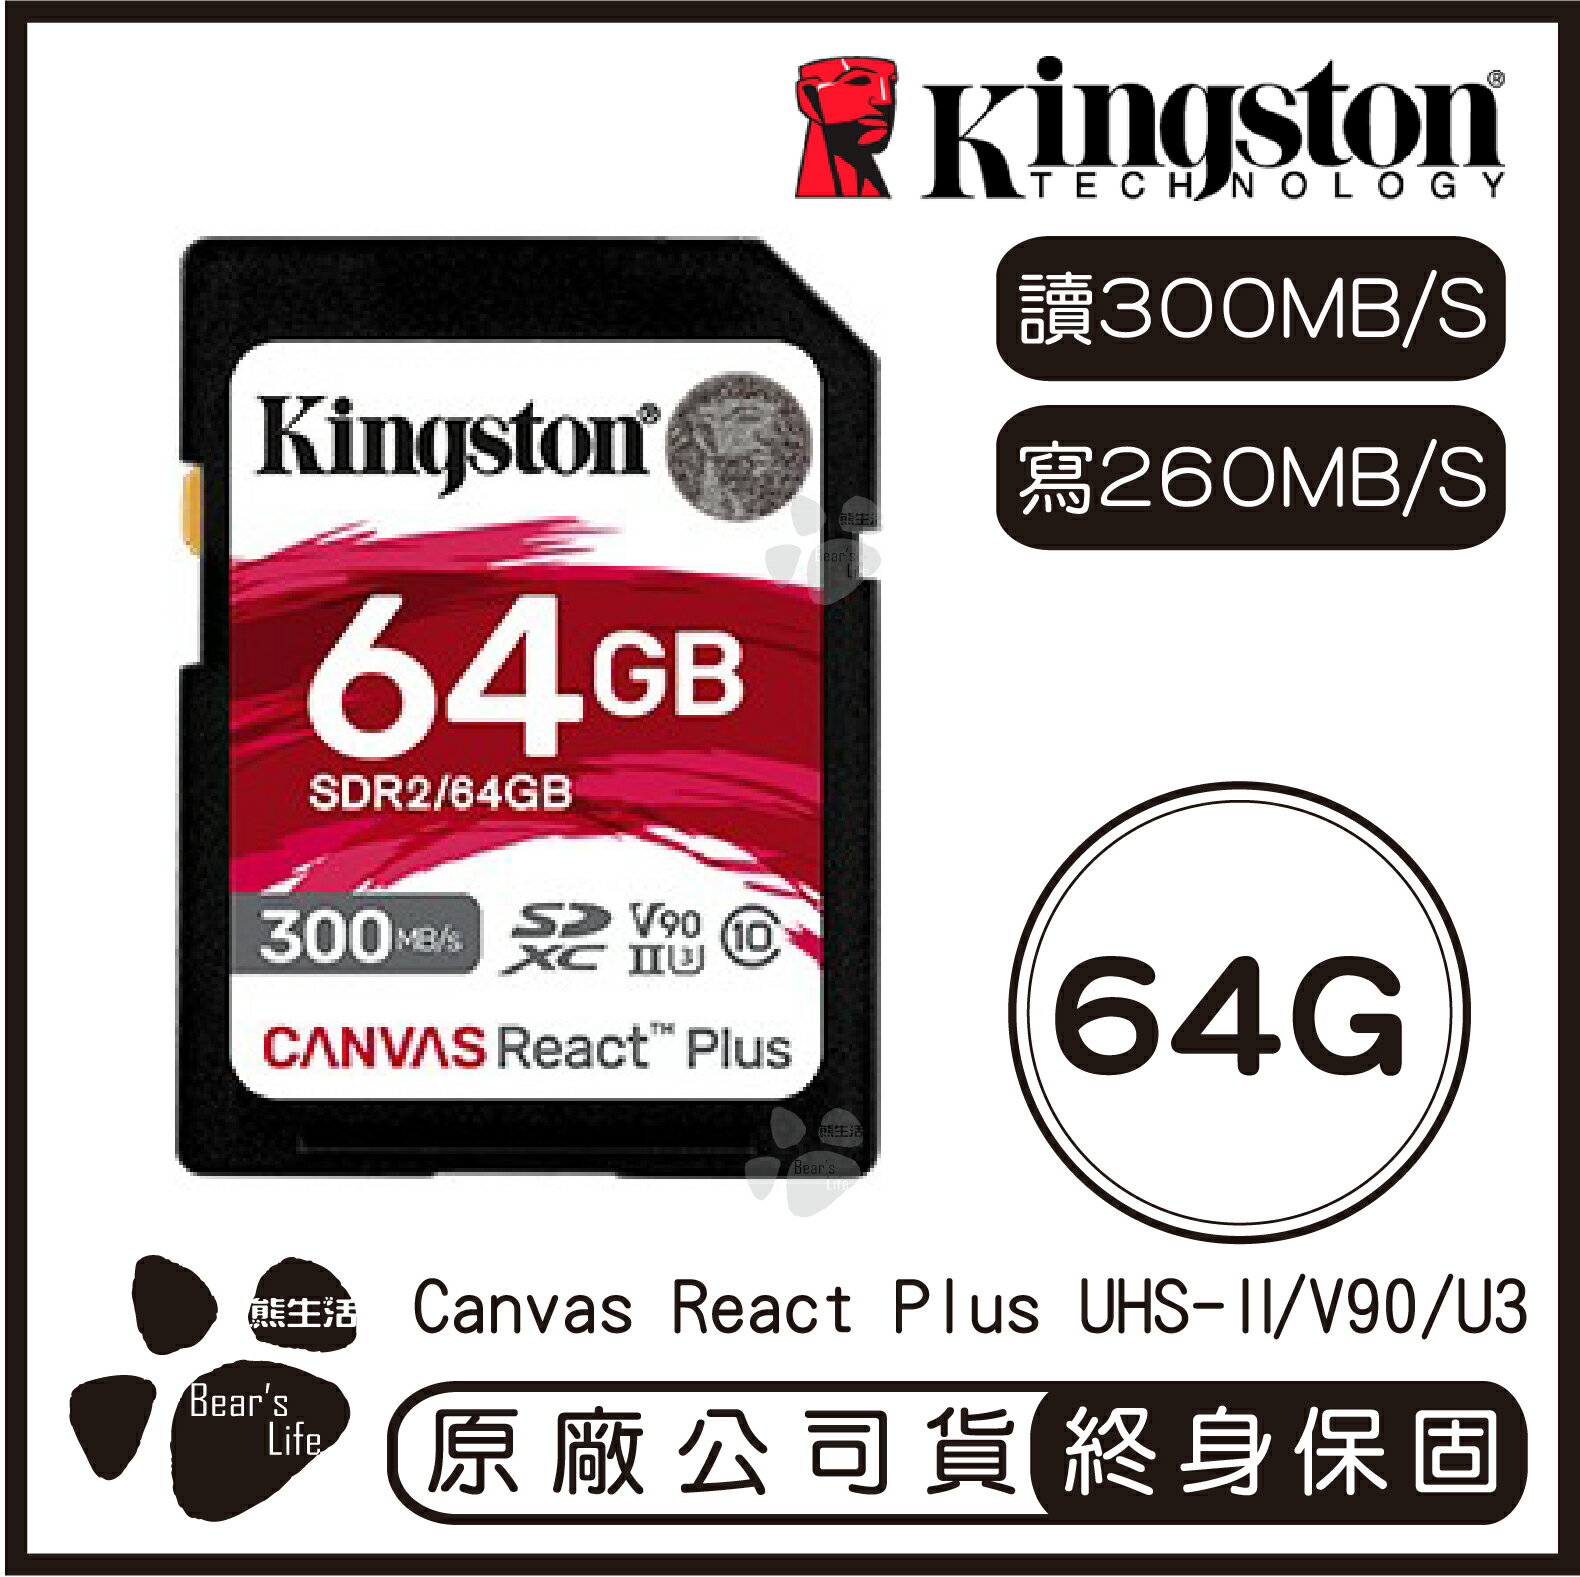 【9%點數】【Kingston金士頓 】Canvas React Plus SD記憶卡 64G 讀300MB/s 寫260MB/s【APP下單9%點數回饋】【限定樂天APP下單】